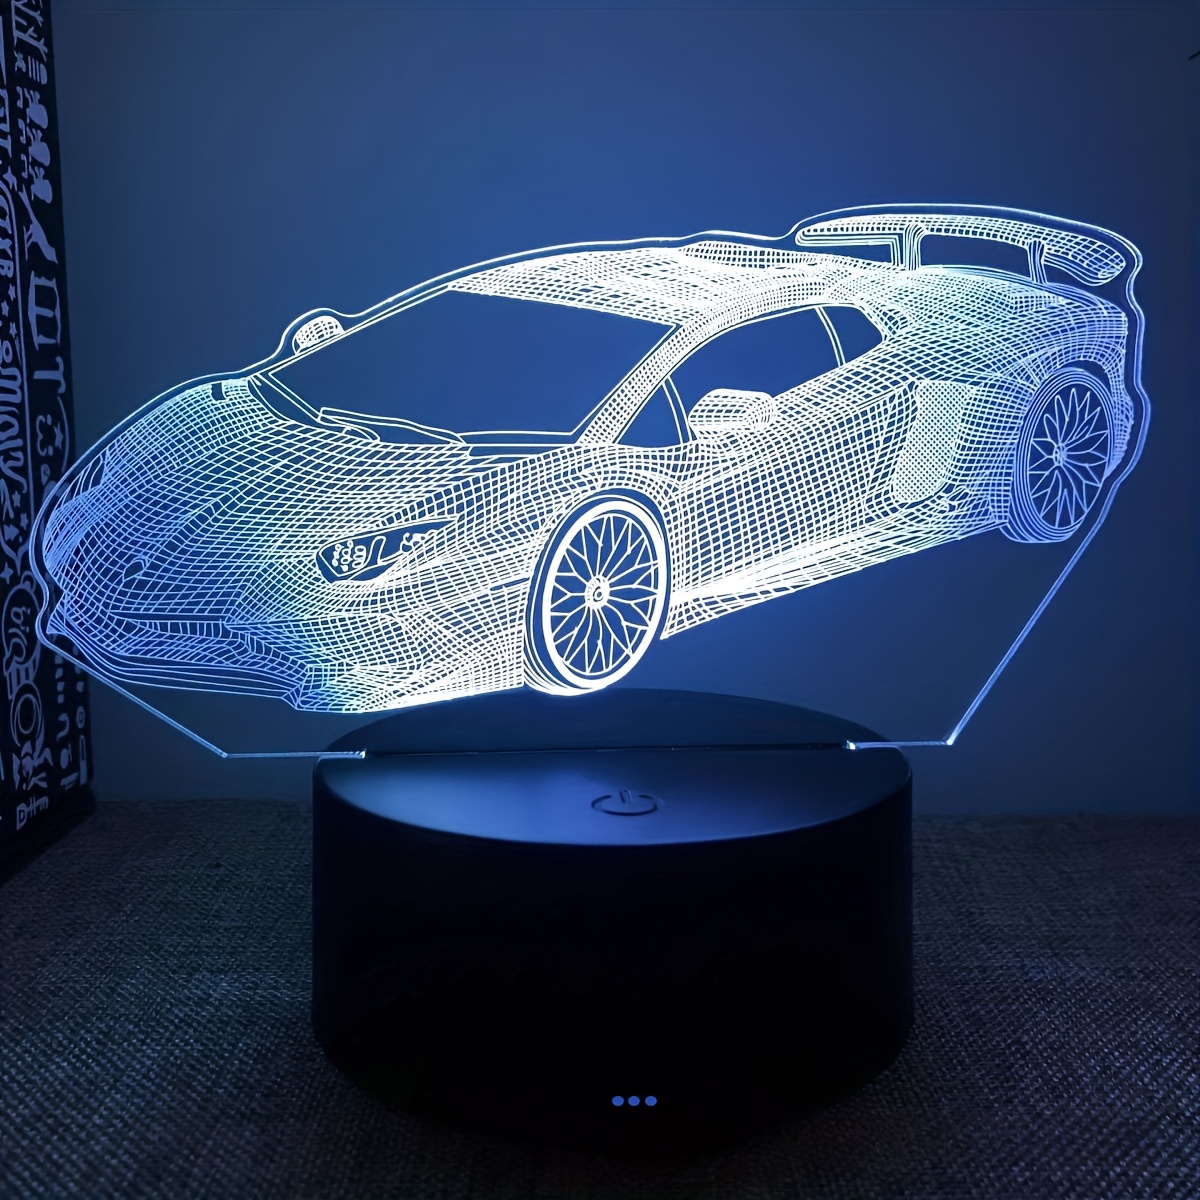 LED-Auto Mittelfinger Gesten licht Multifunktions-Warnleuchte drei